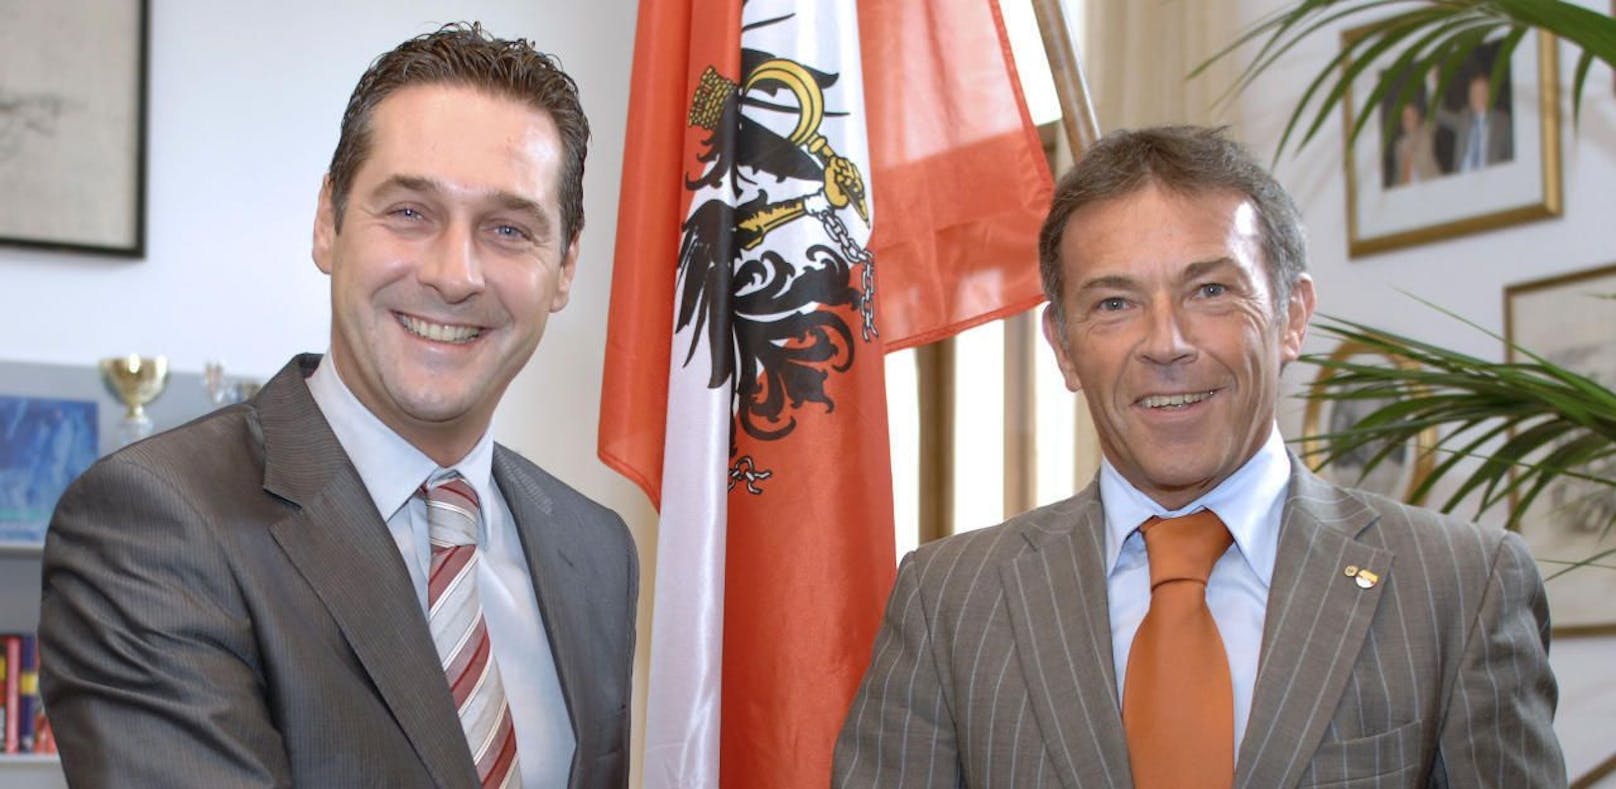 Ein Bild aus dem Archiv:  FP-Chef Heinz Christian Strache (l) und der verstorbene Kärntner Landeshauptmann Jörg Haider (BZÖ) bei Gesprächen in Wien.